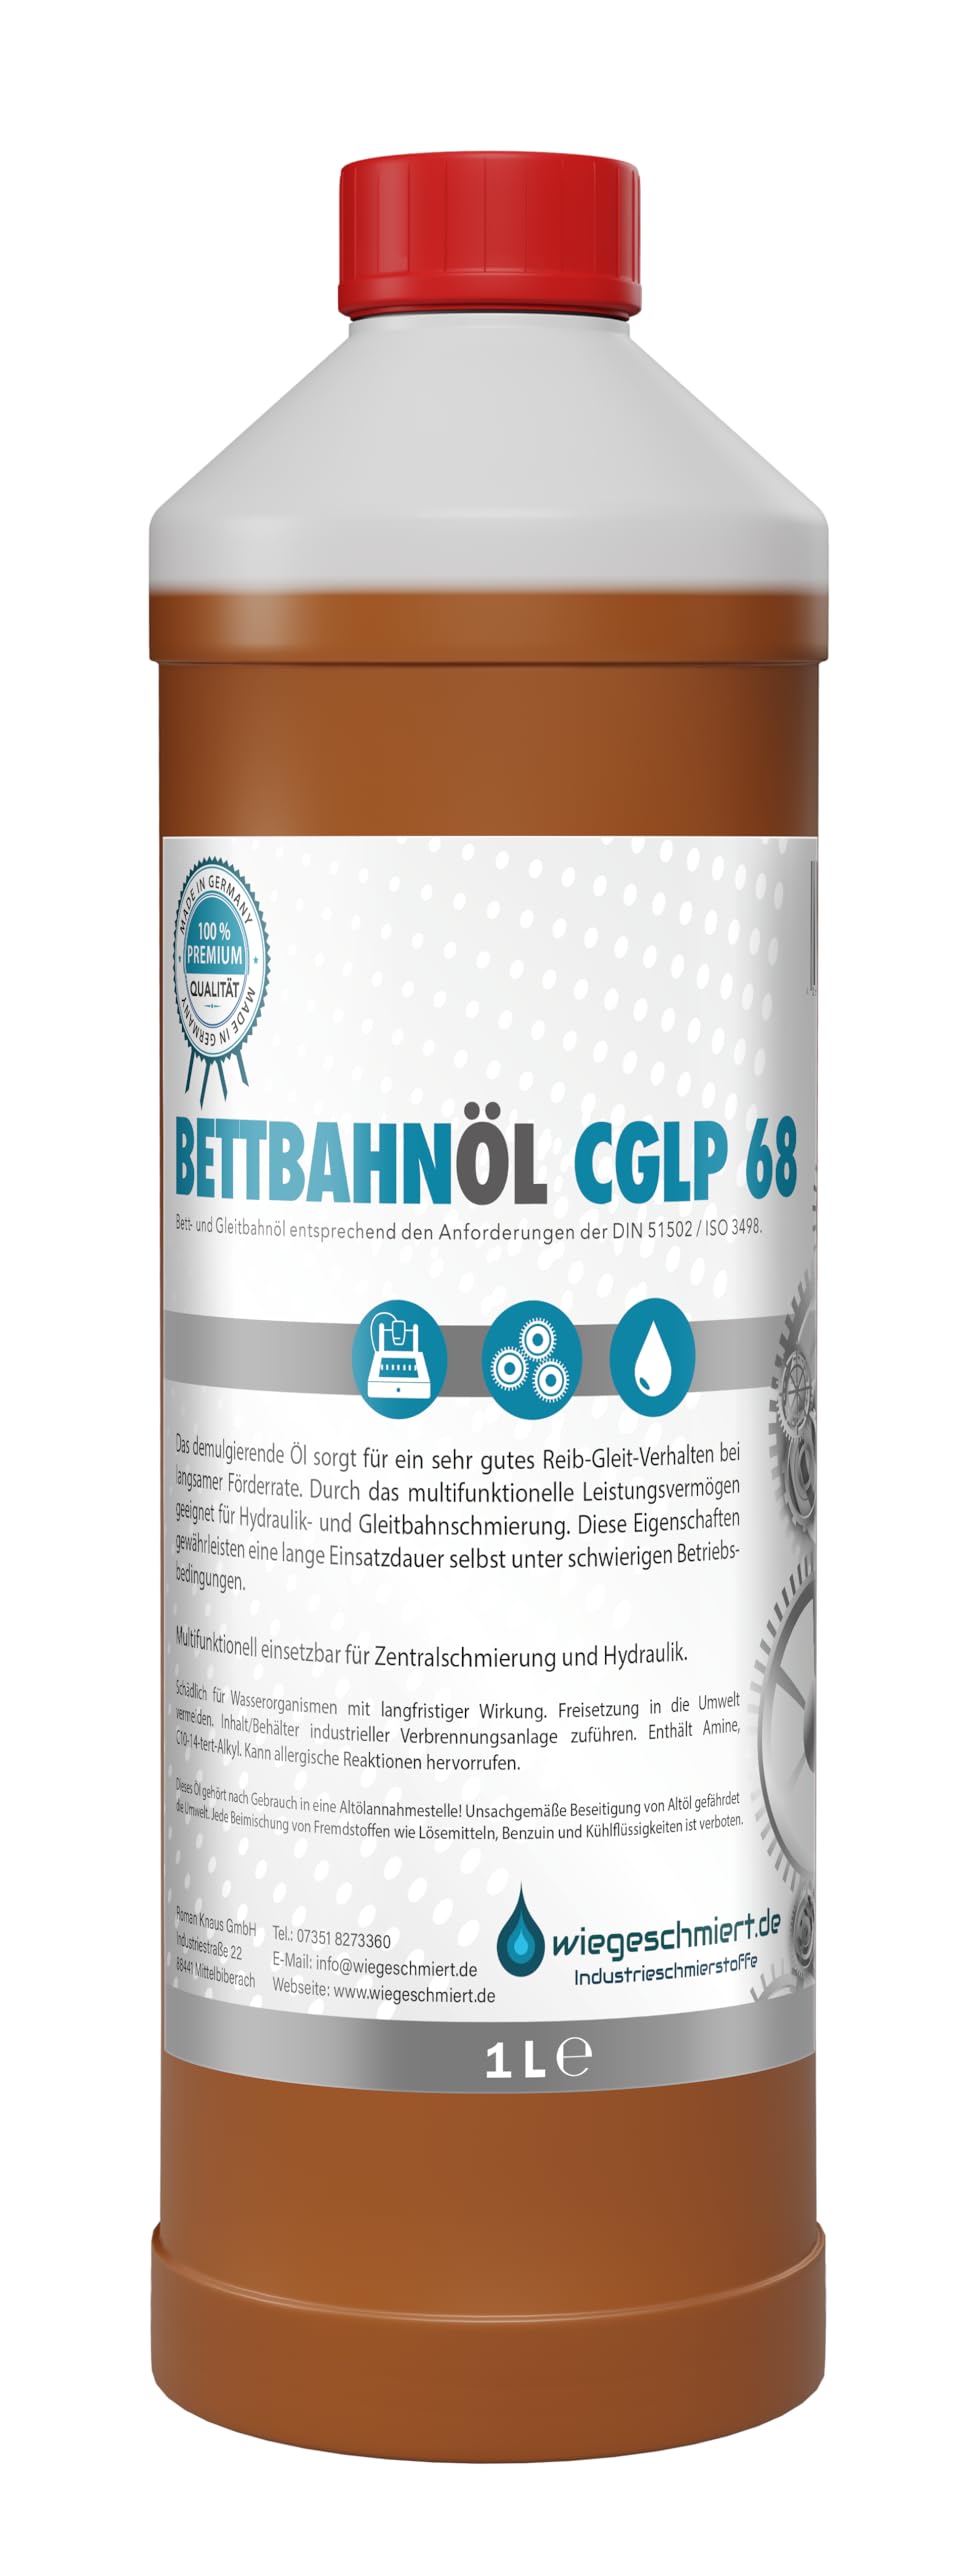 Bettbahnöl Gleitbahnöl CGLP 68 nach DIN 51502/ISO 3498 (1 Liter) von wiegeschmiert.de